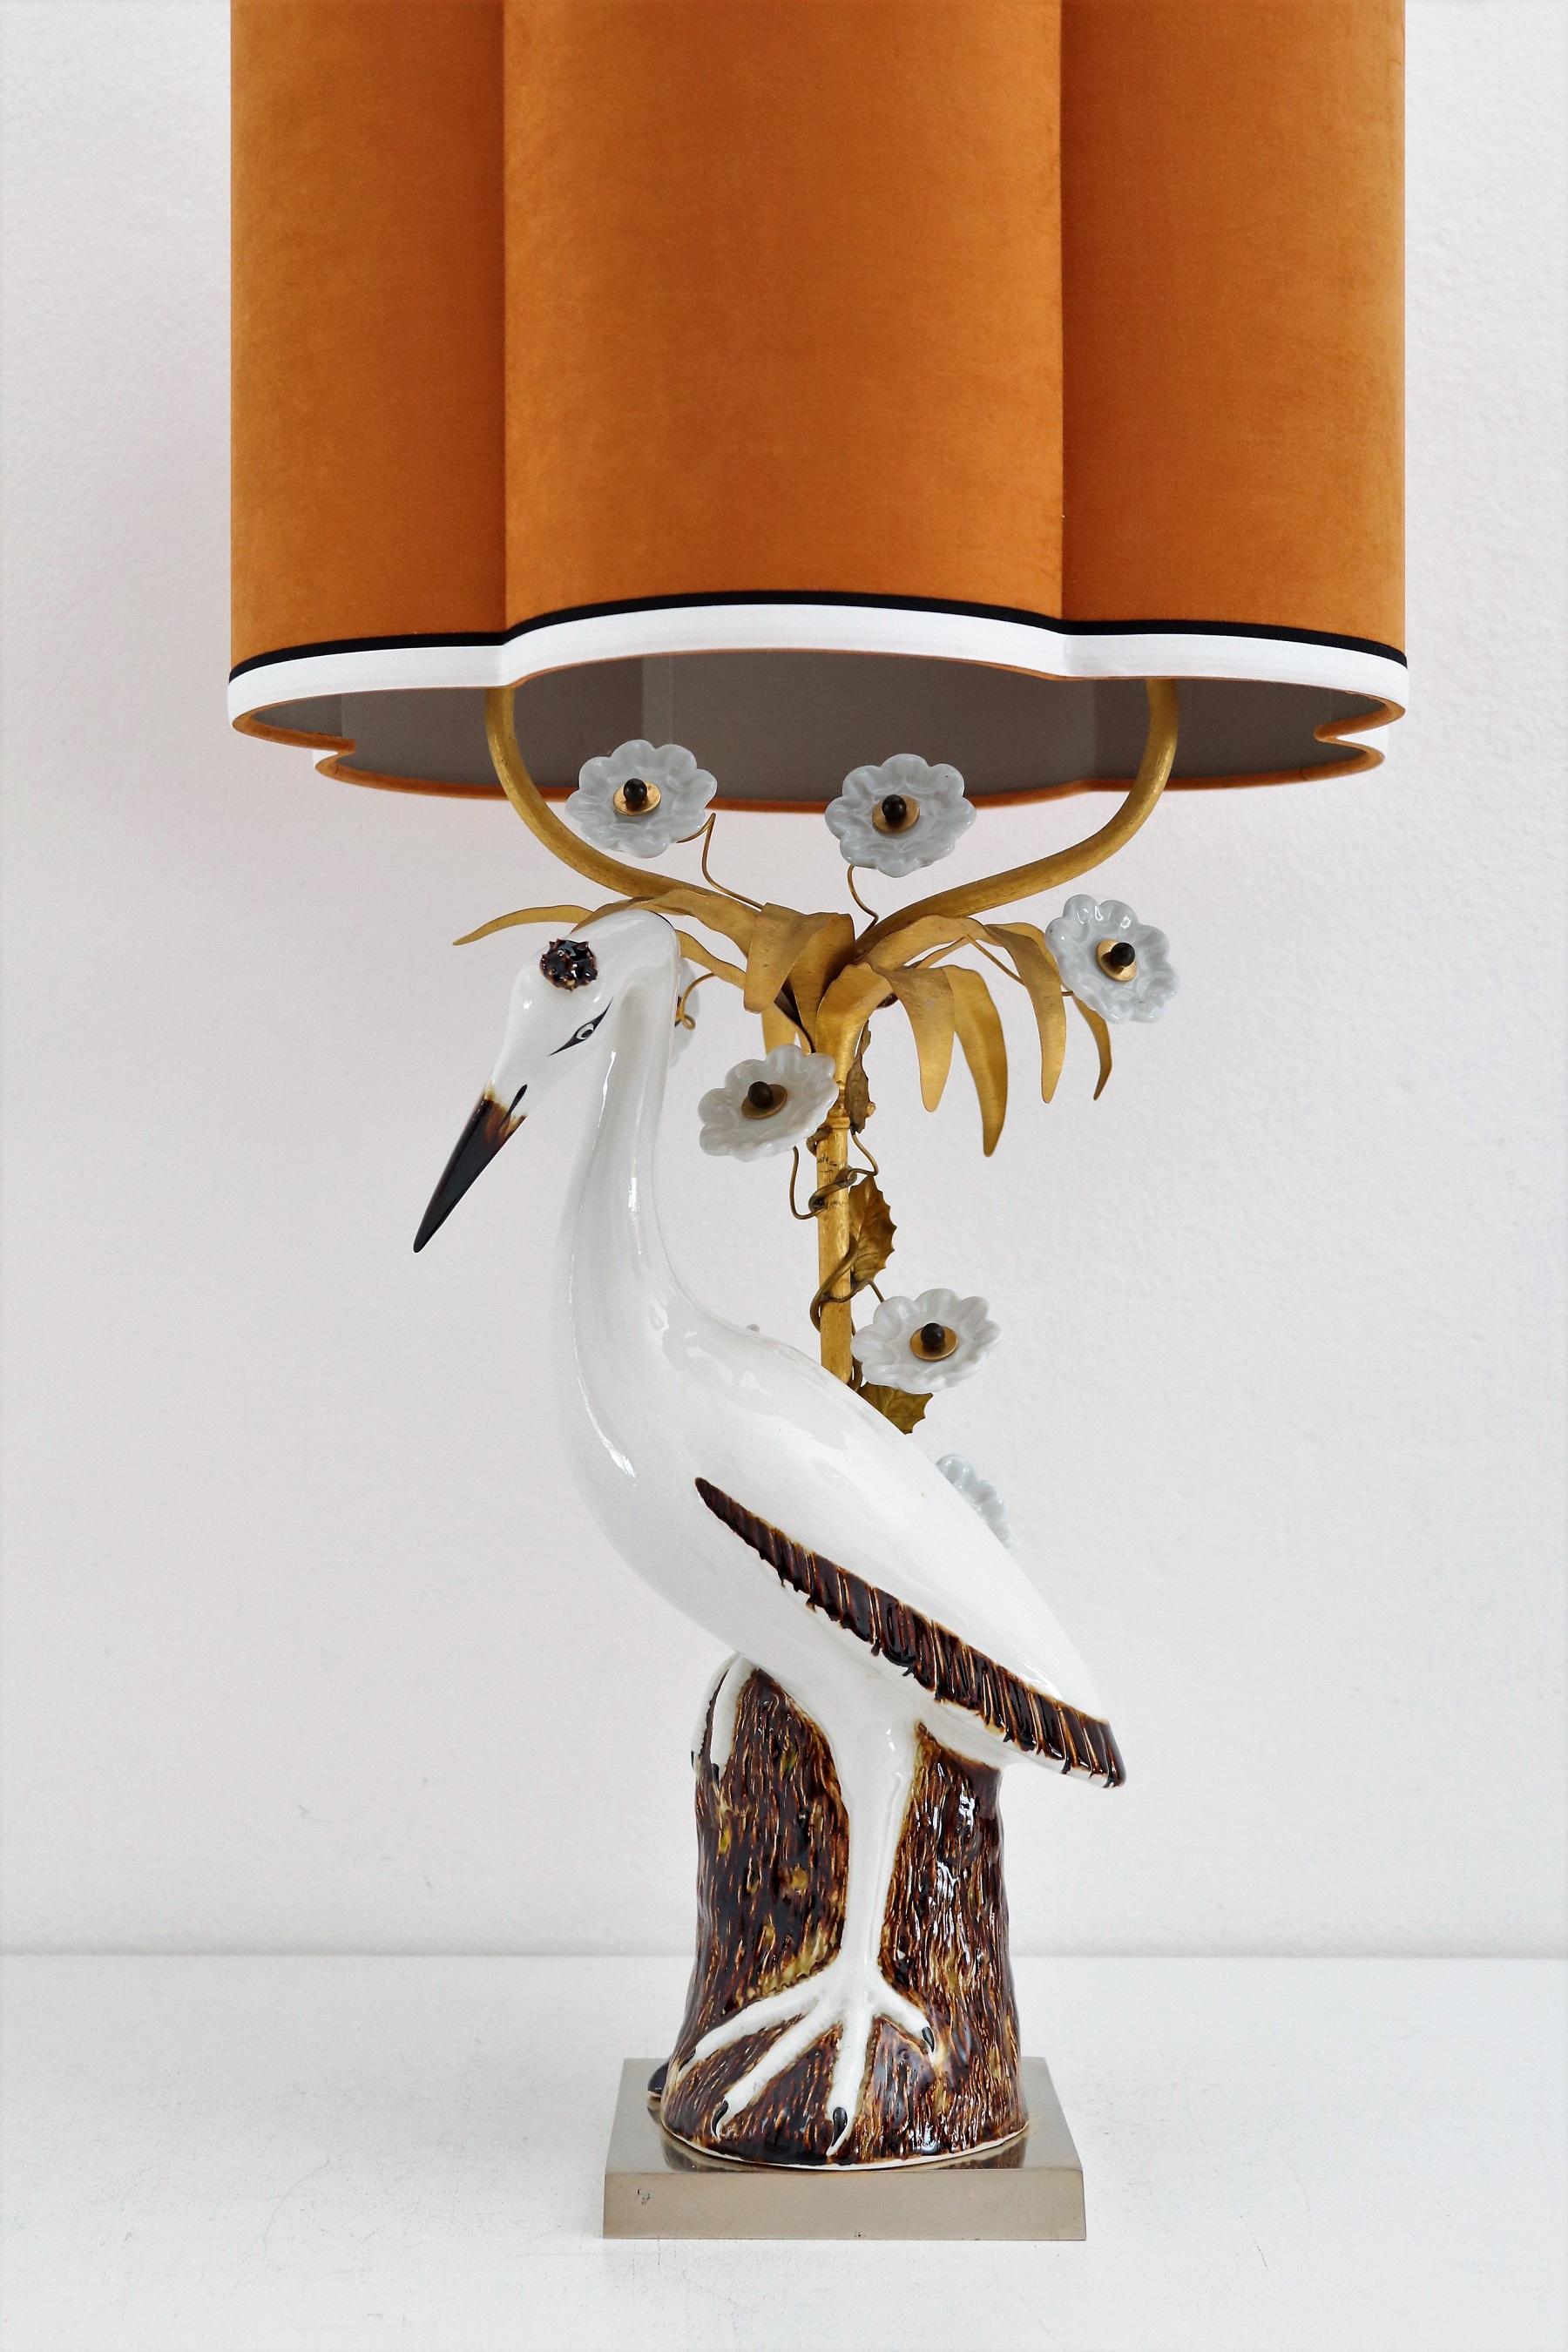 Wunderschöne Tischlampe in Form eines Kranichs oder Reihers, aus handbemaltem Porzellan.
Hergestellt in Frankreich in den 1960er und 1970er Jahren.
Die Kranich - Reiher Porzellanfigur steht auf einem vergoldeten Metallsockel vor einer vergoldeten